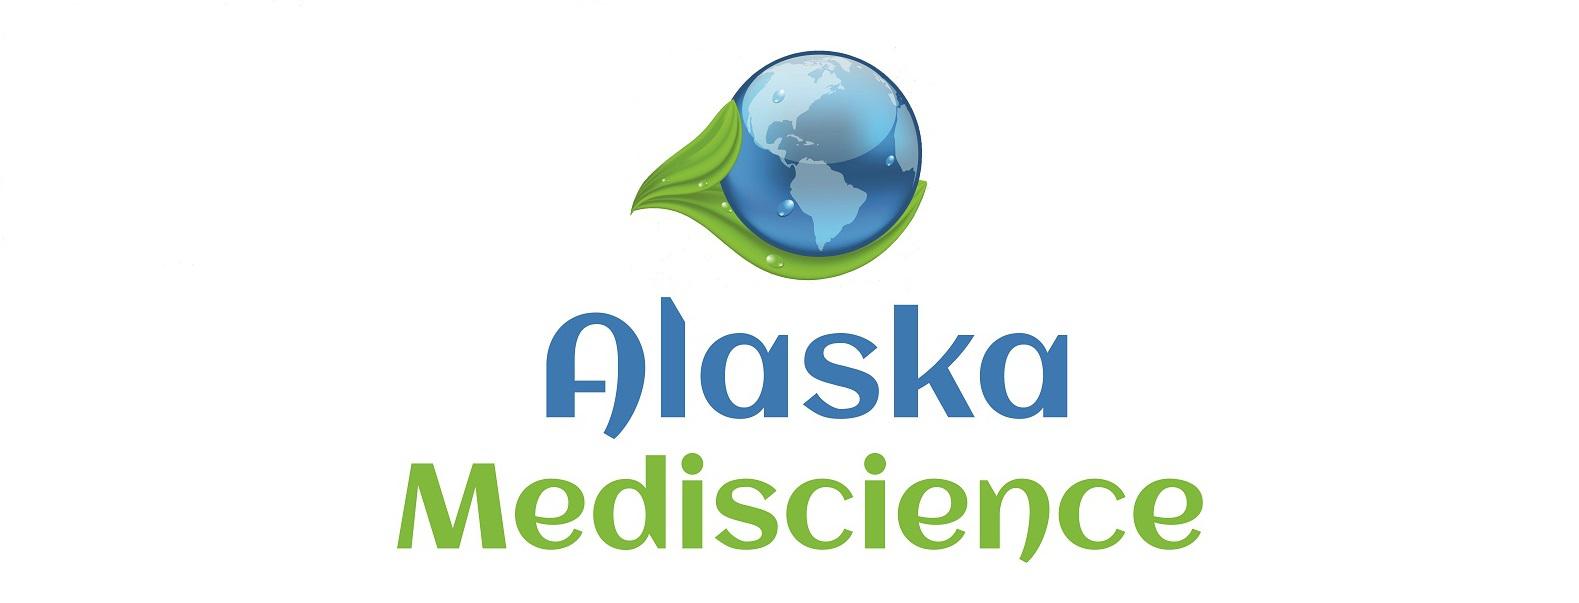 Alaska Mediscience Logo